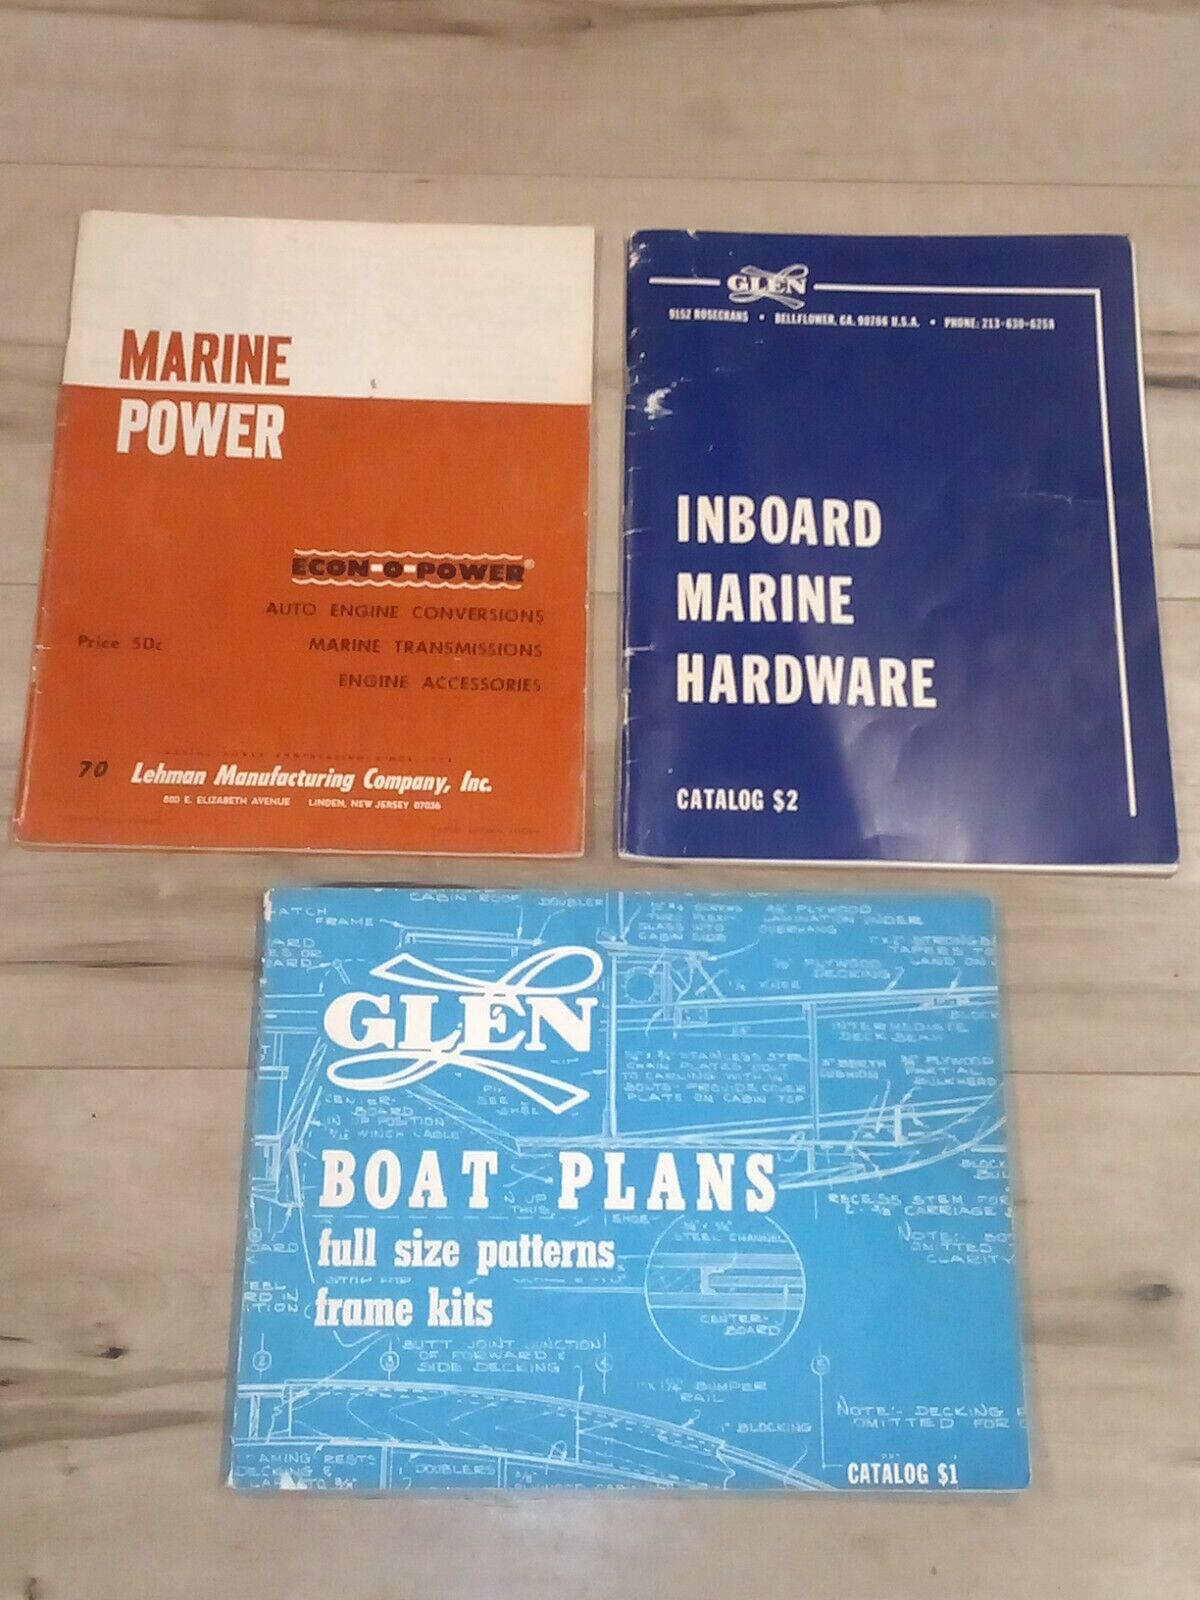 Glen Boat Plans Full Size Patterns Frame Kits Catalog - 1976 + Inboard Scooner +